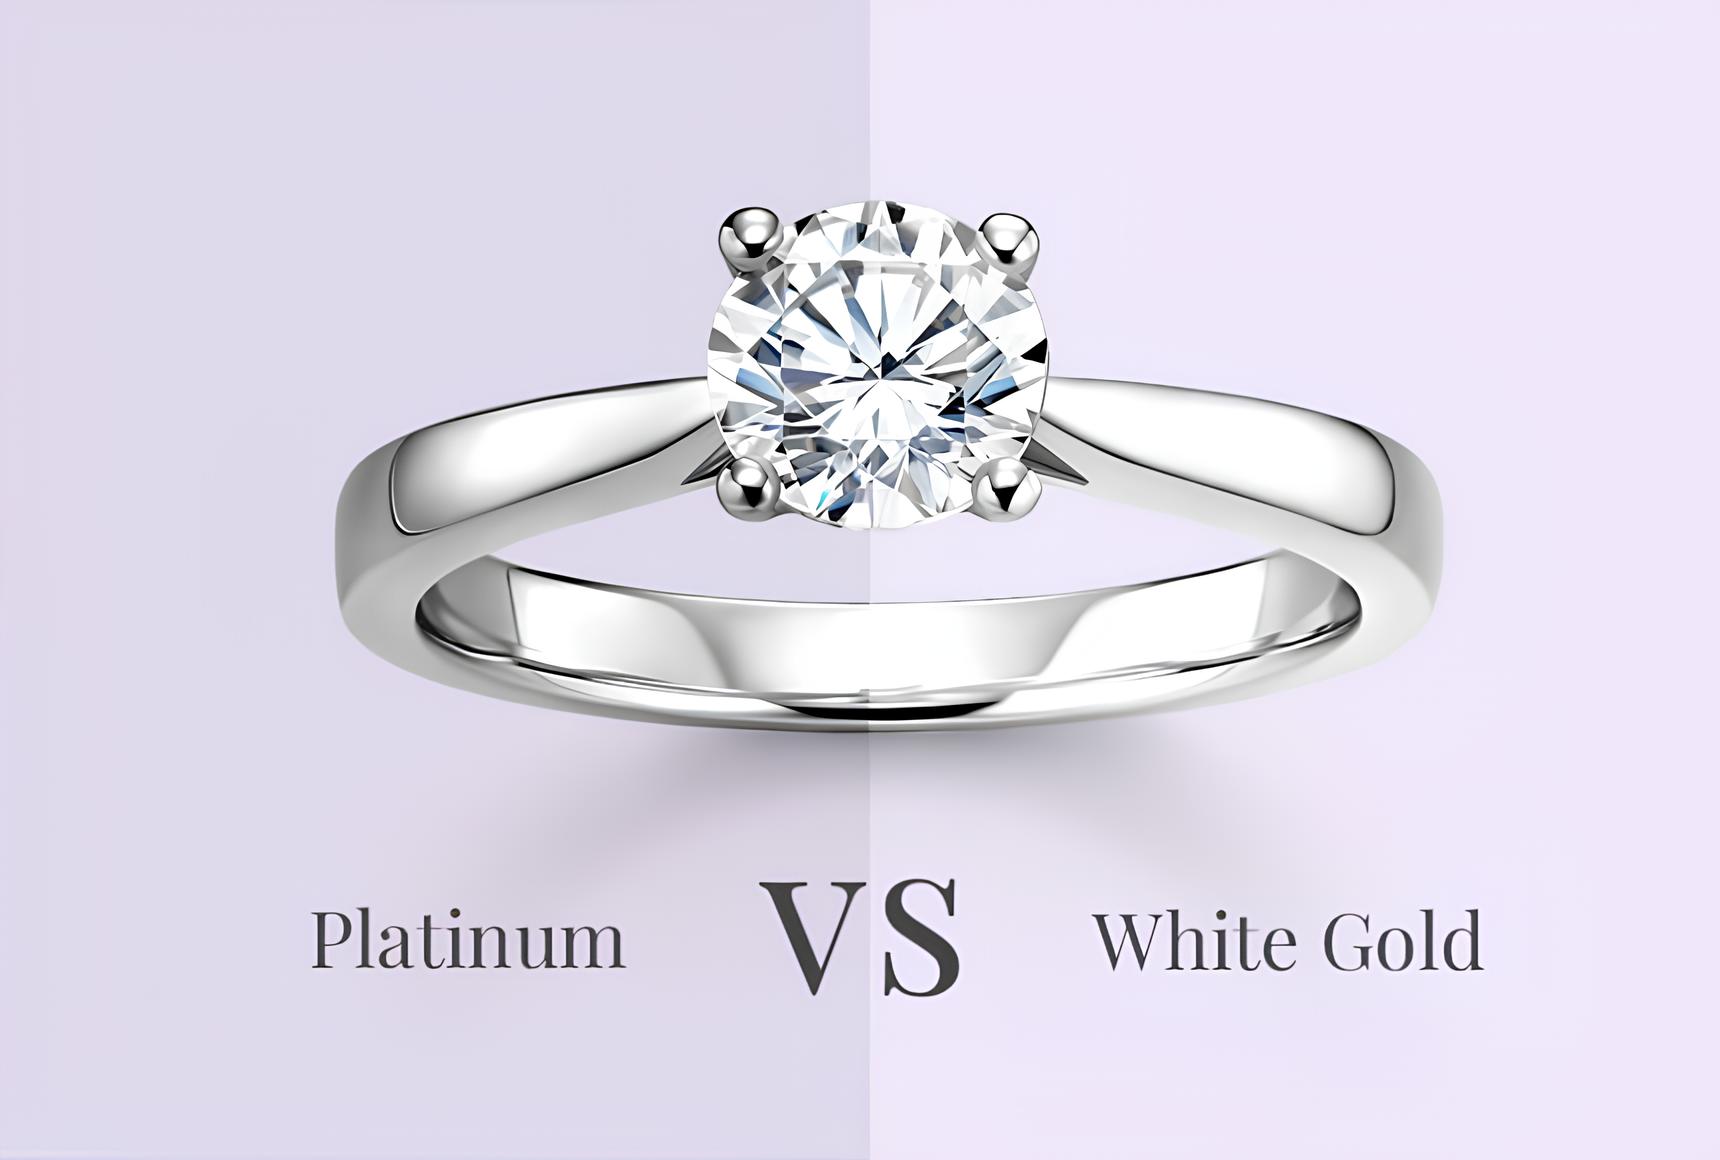 Platinum ring vs white gold ring